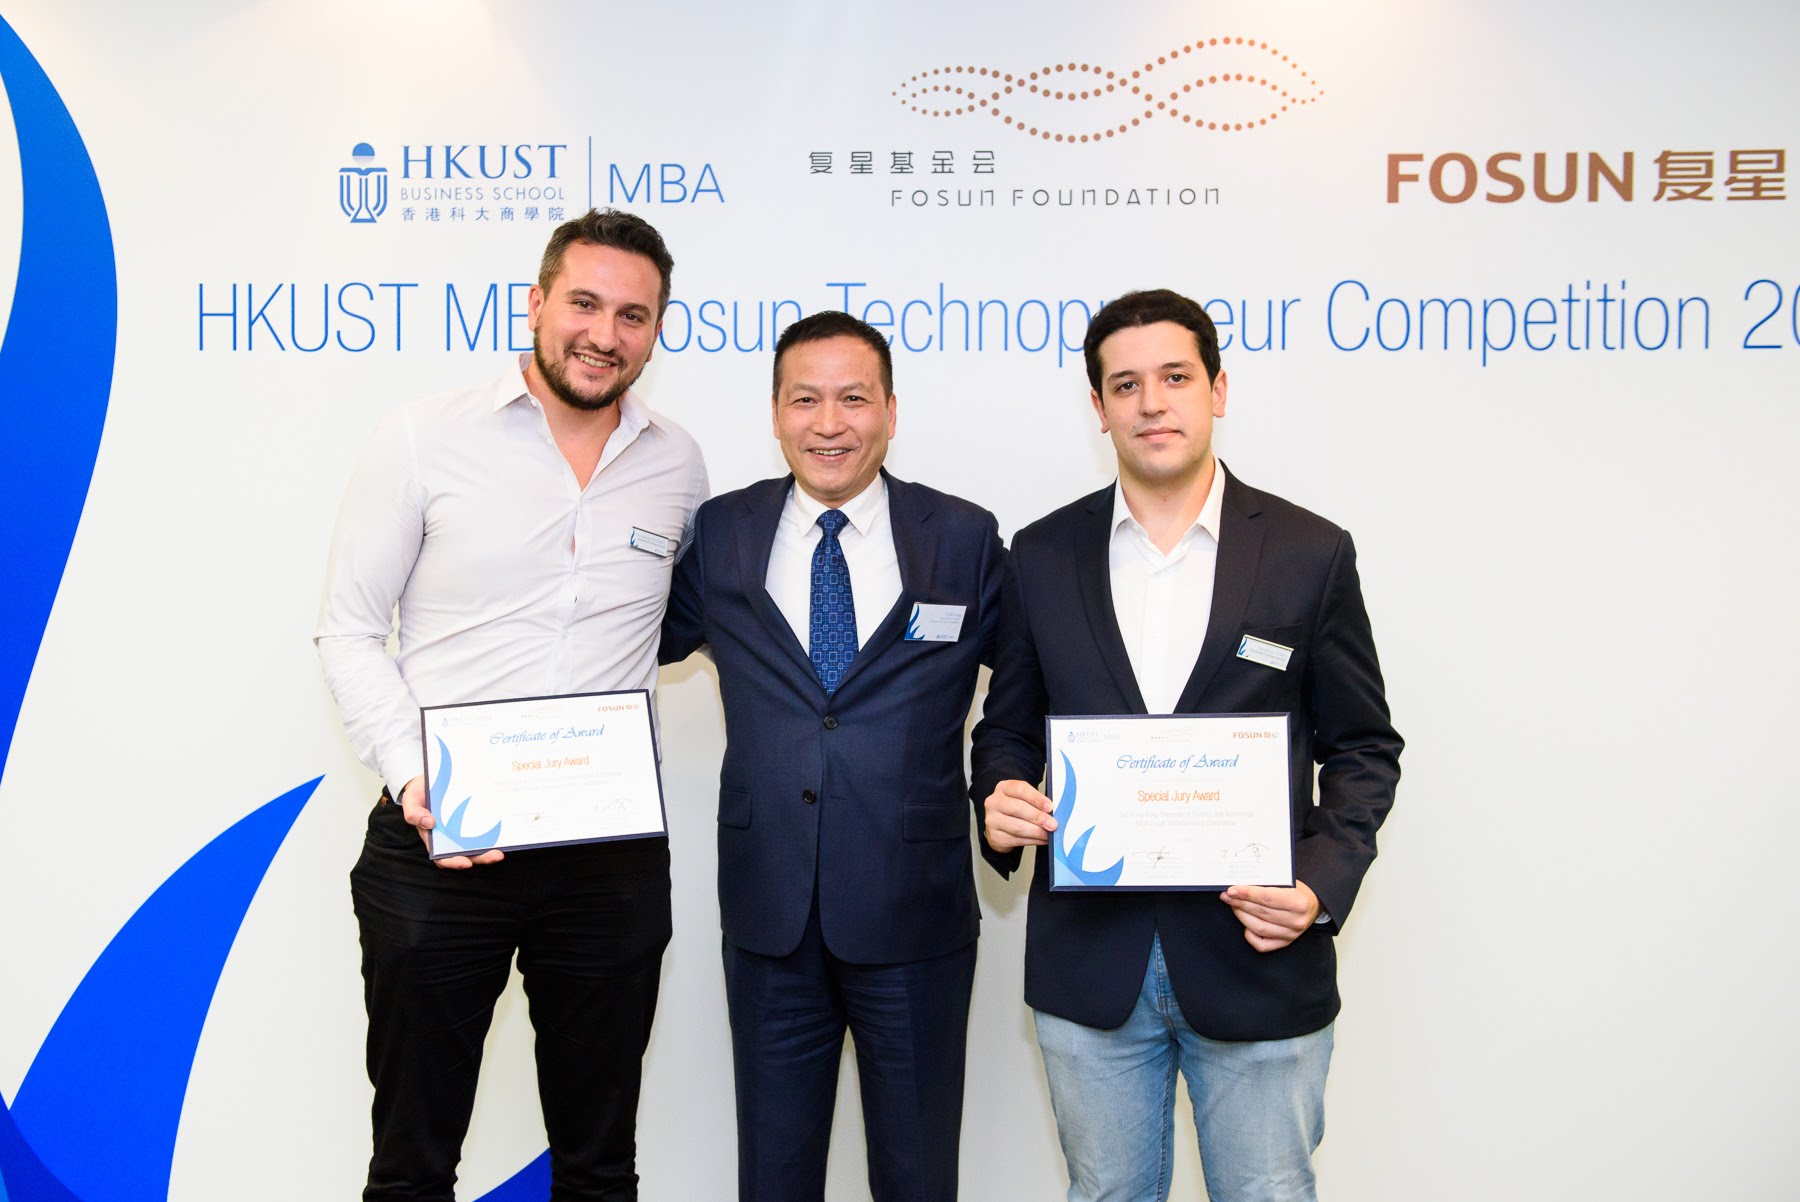 在科大商学院与复星基金会合办的2018科技创业大赛上，Alex （左）参与创办的3DK Tech获颁「评审团特别奖」。 